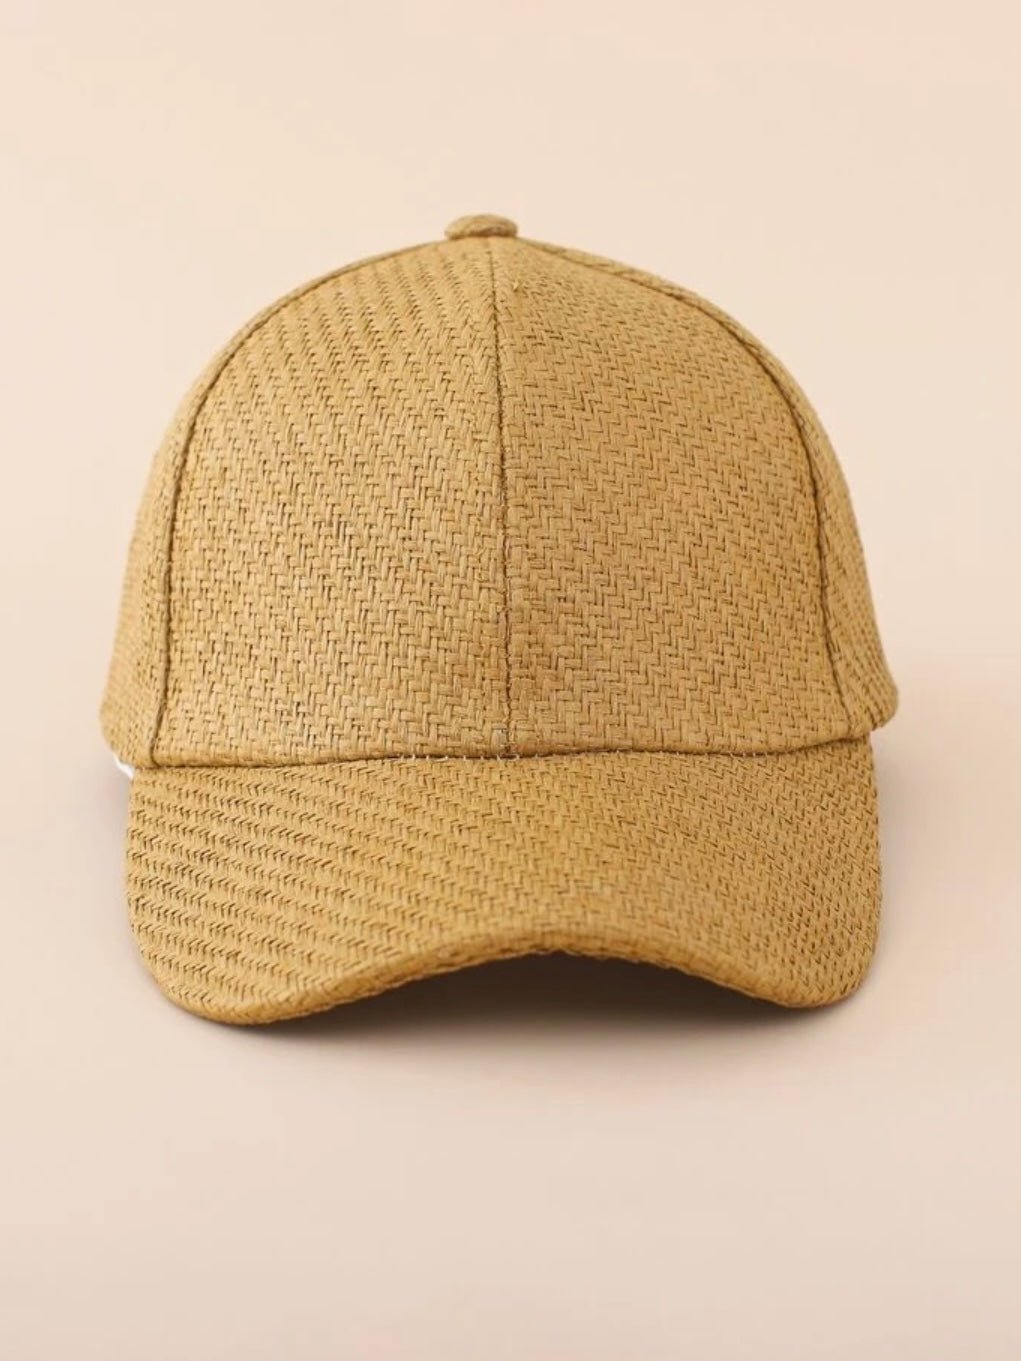 Palm knitted baseball hat - Wapas